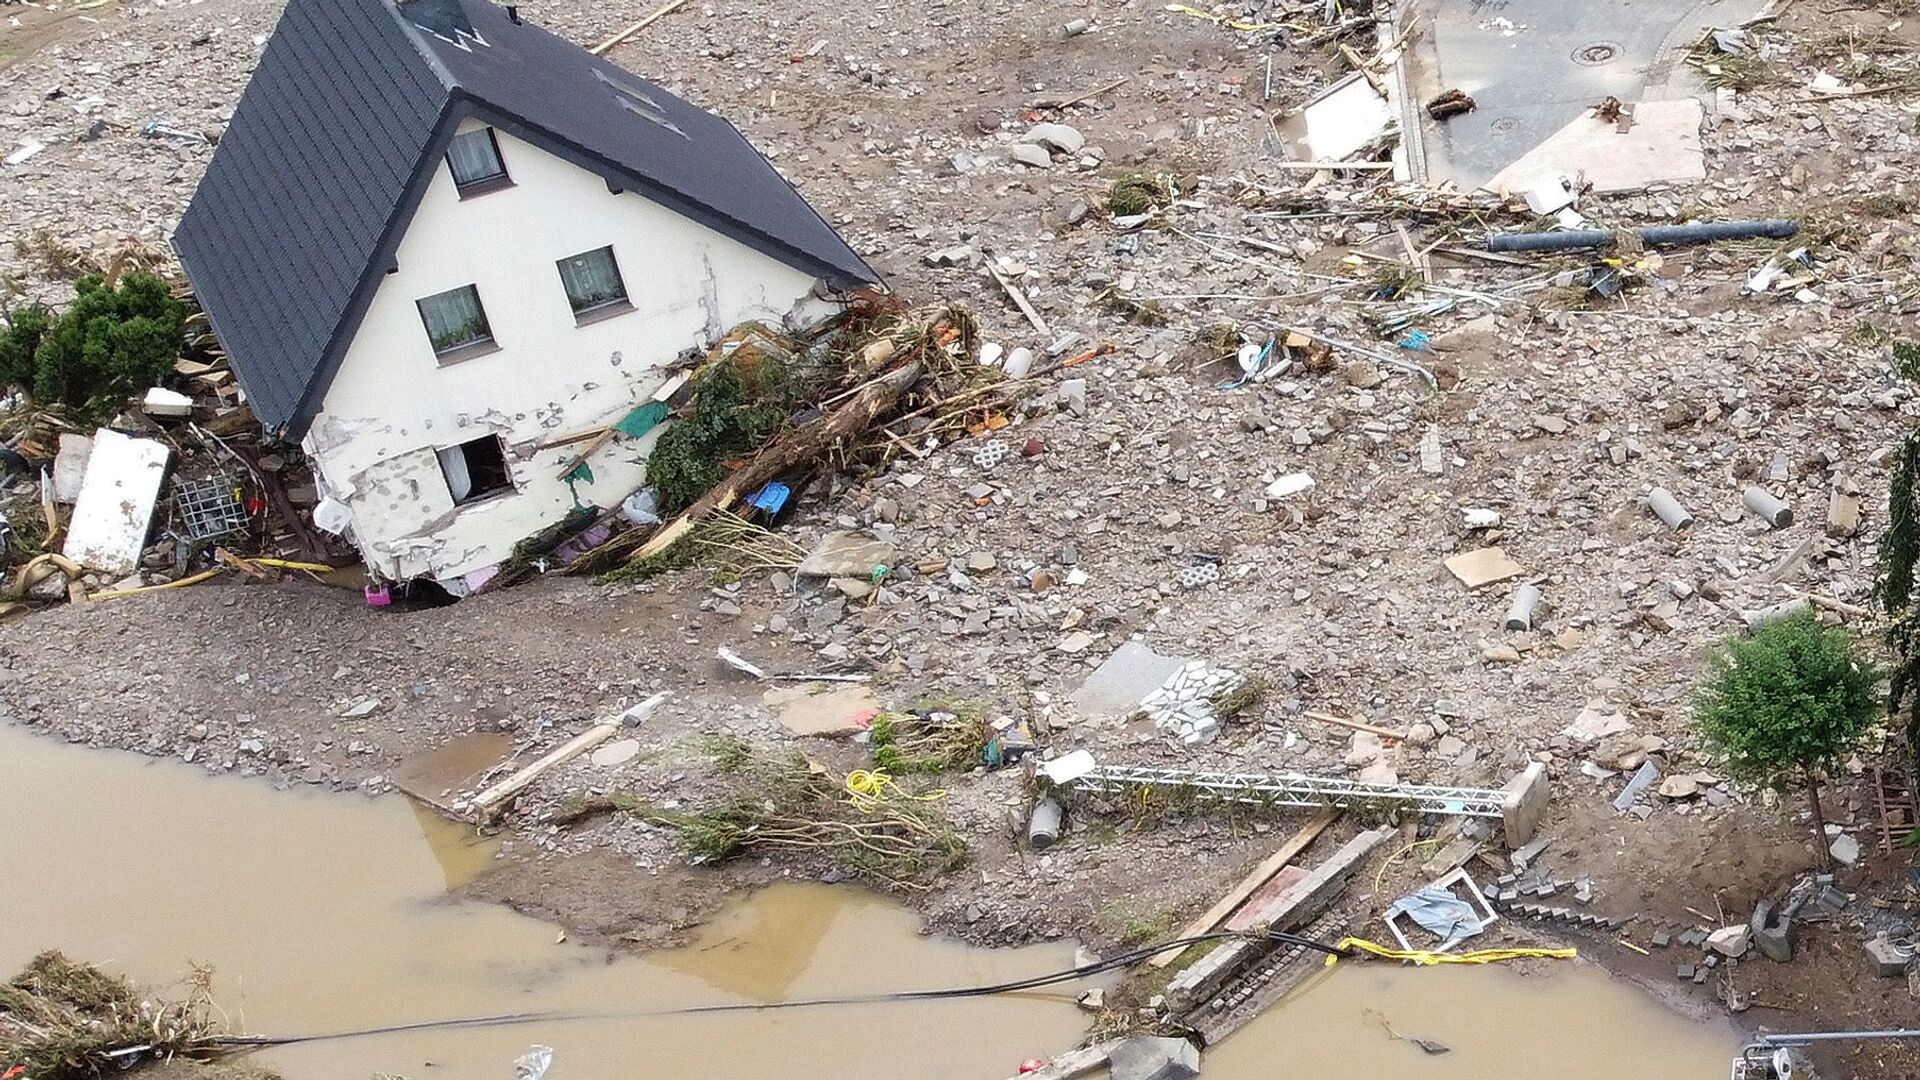 Общий вид зоны, пострадавшей от наводнения после проливных дождей в Шульде, Германия  - Sputnik Тоҷикистон, 1920, 18.07.2021